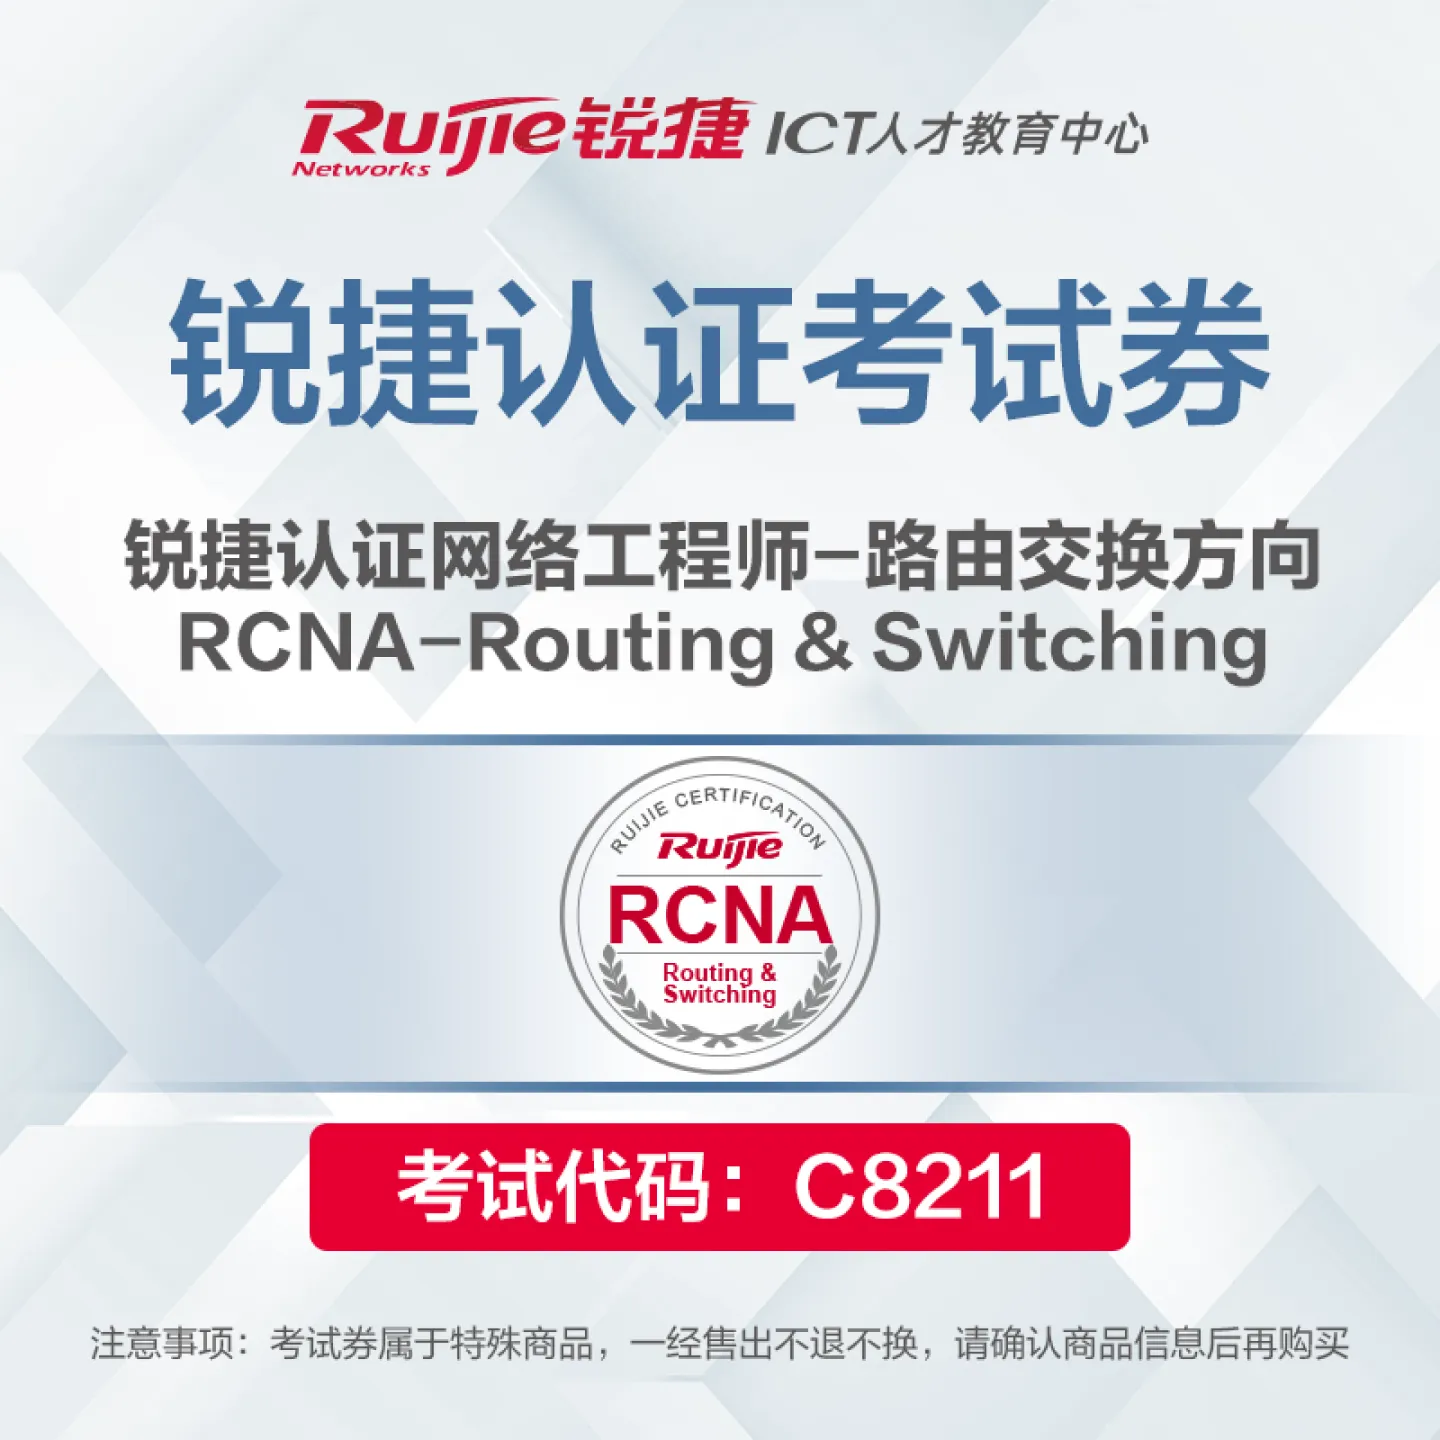 ����璇��搞��RCNA-Routing & Switching